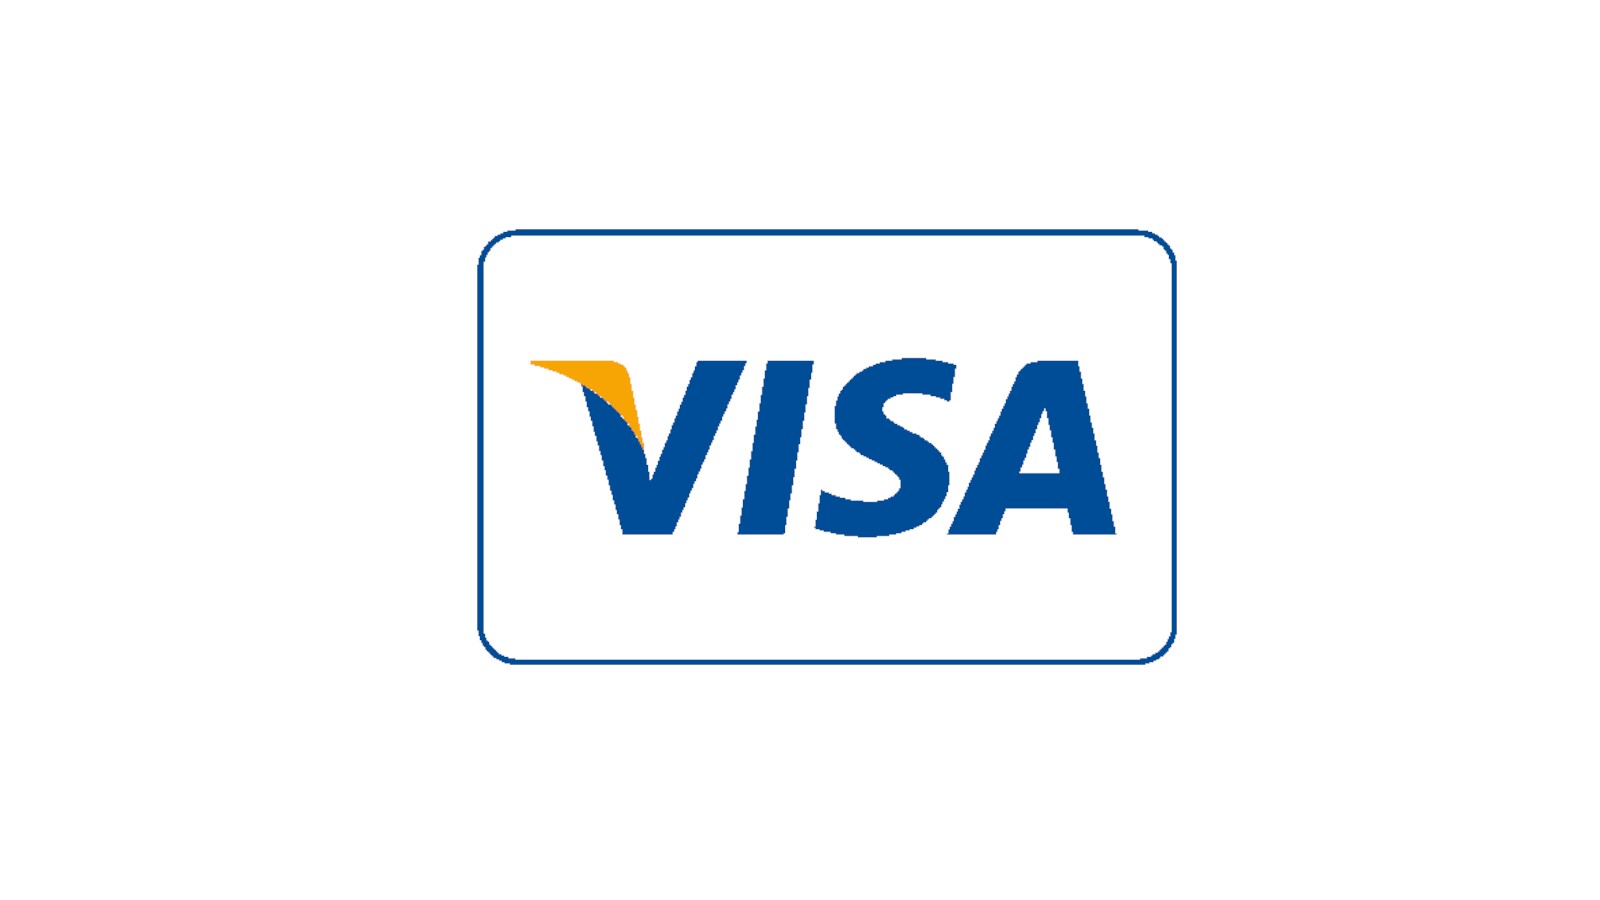 Visa tj. Логотип visa. Лого платежных систем виза. Значок карты виза. Cisa логотип.